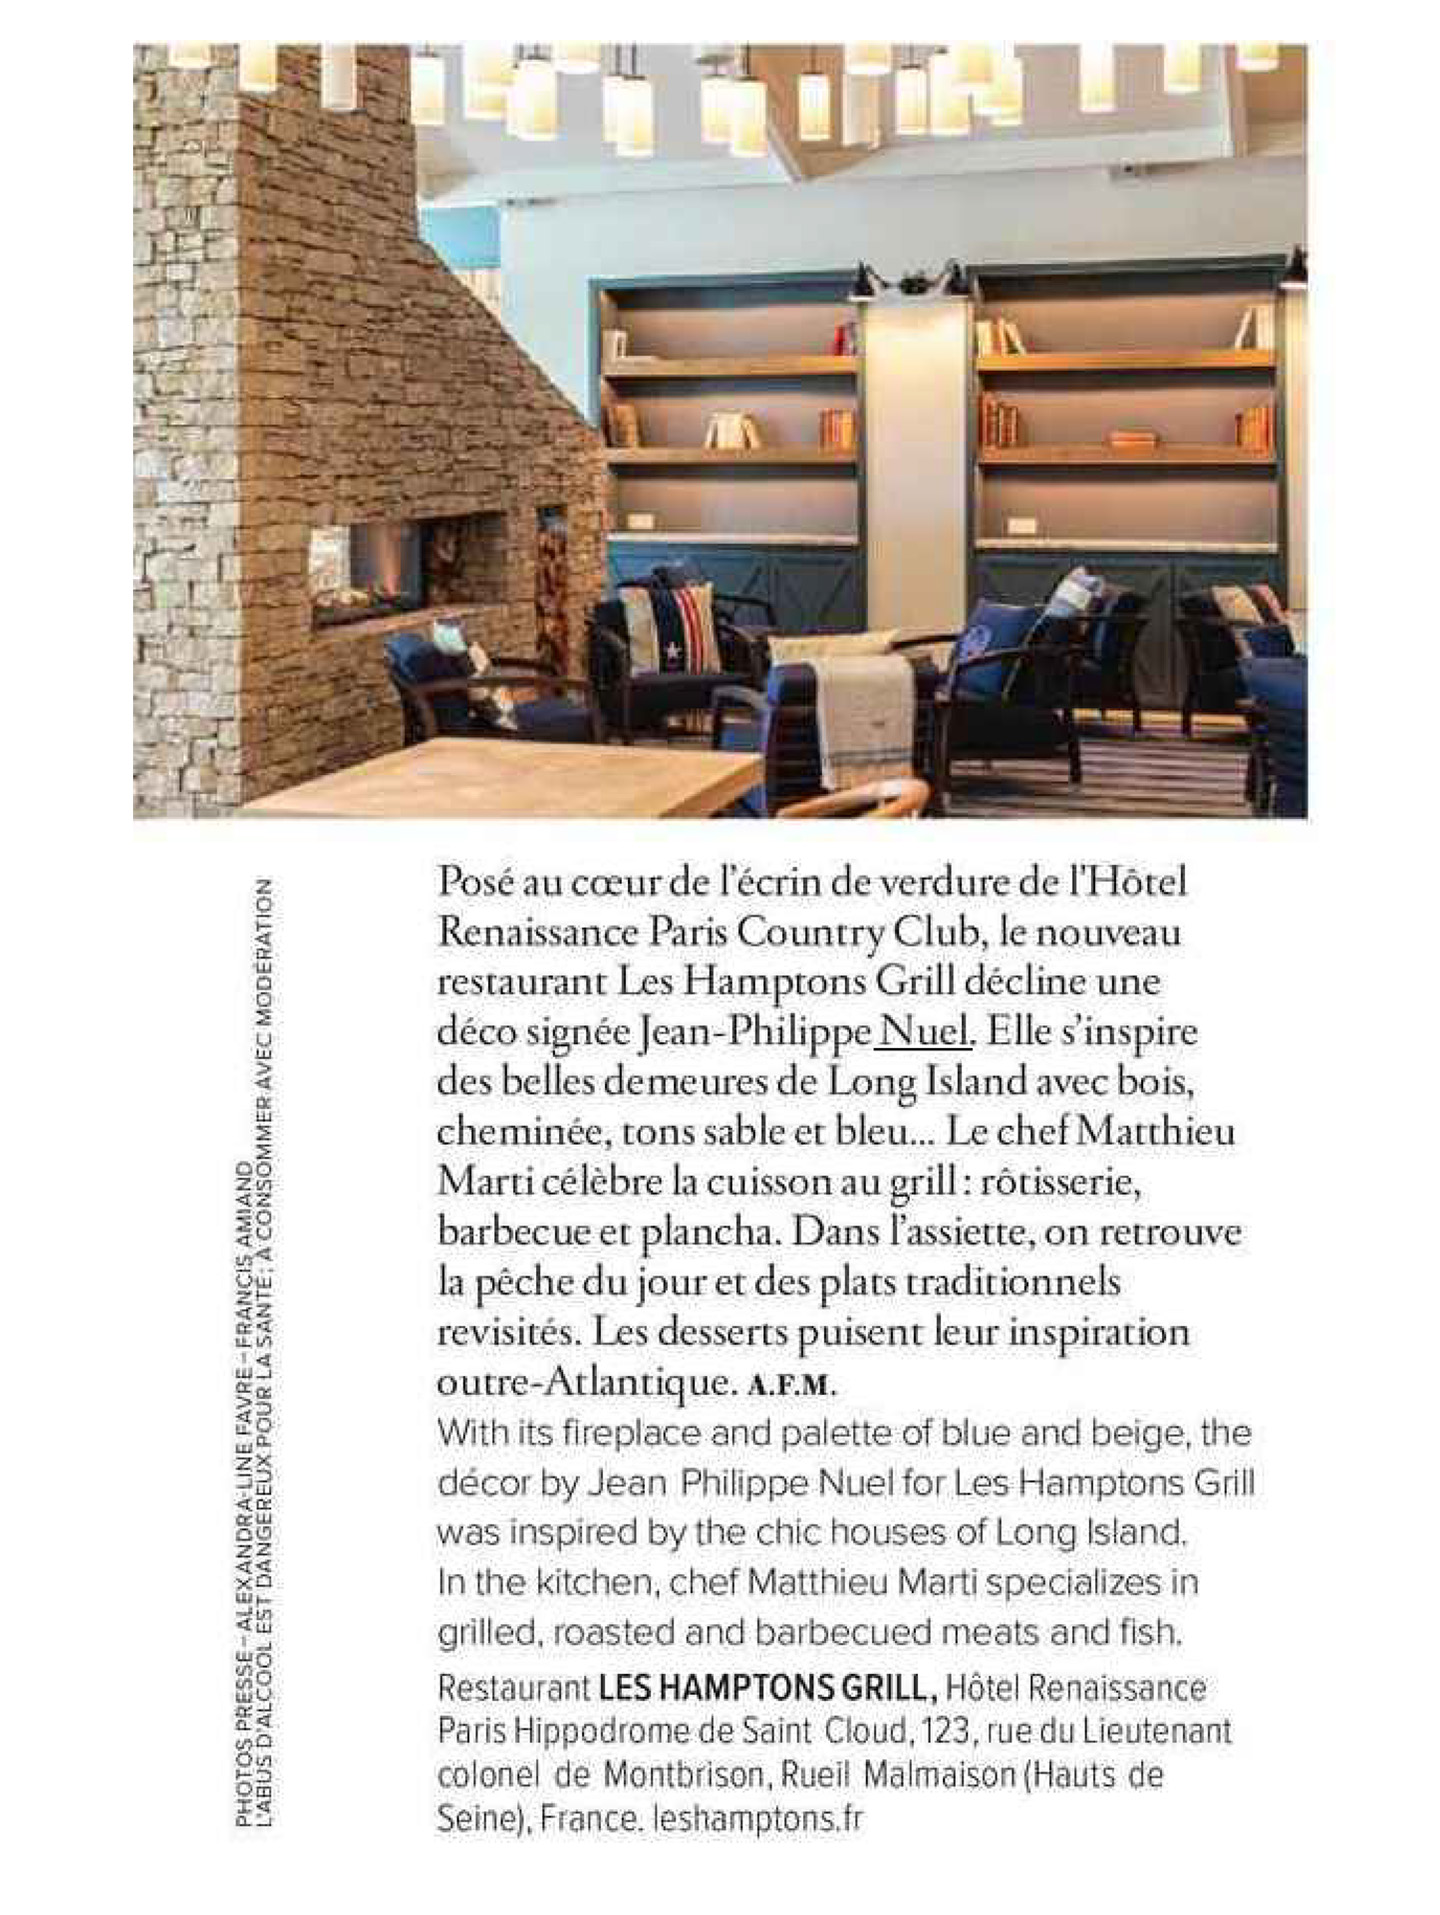 Article sur le restaurant Hamptons grill réalisé par le studio jean-Philippe Nuel dans le magazine Air France madame, restaurant de luxe, architecture d'intérieur de luxe, hôtel français